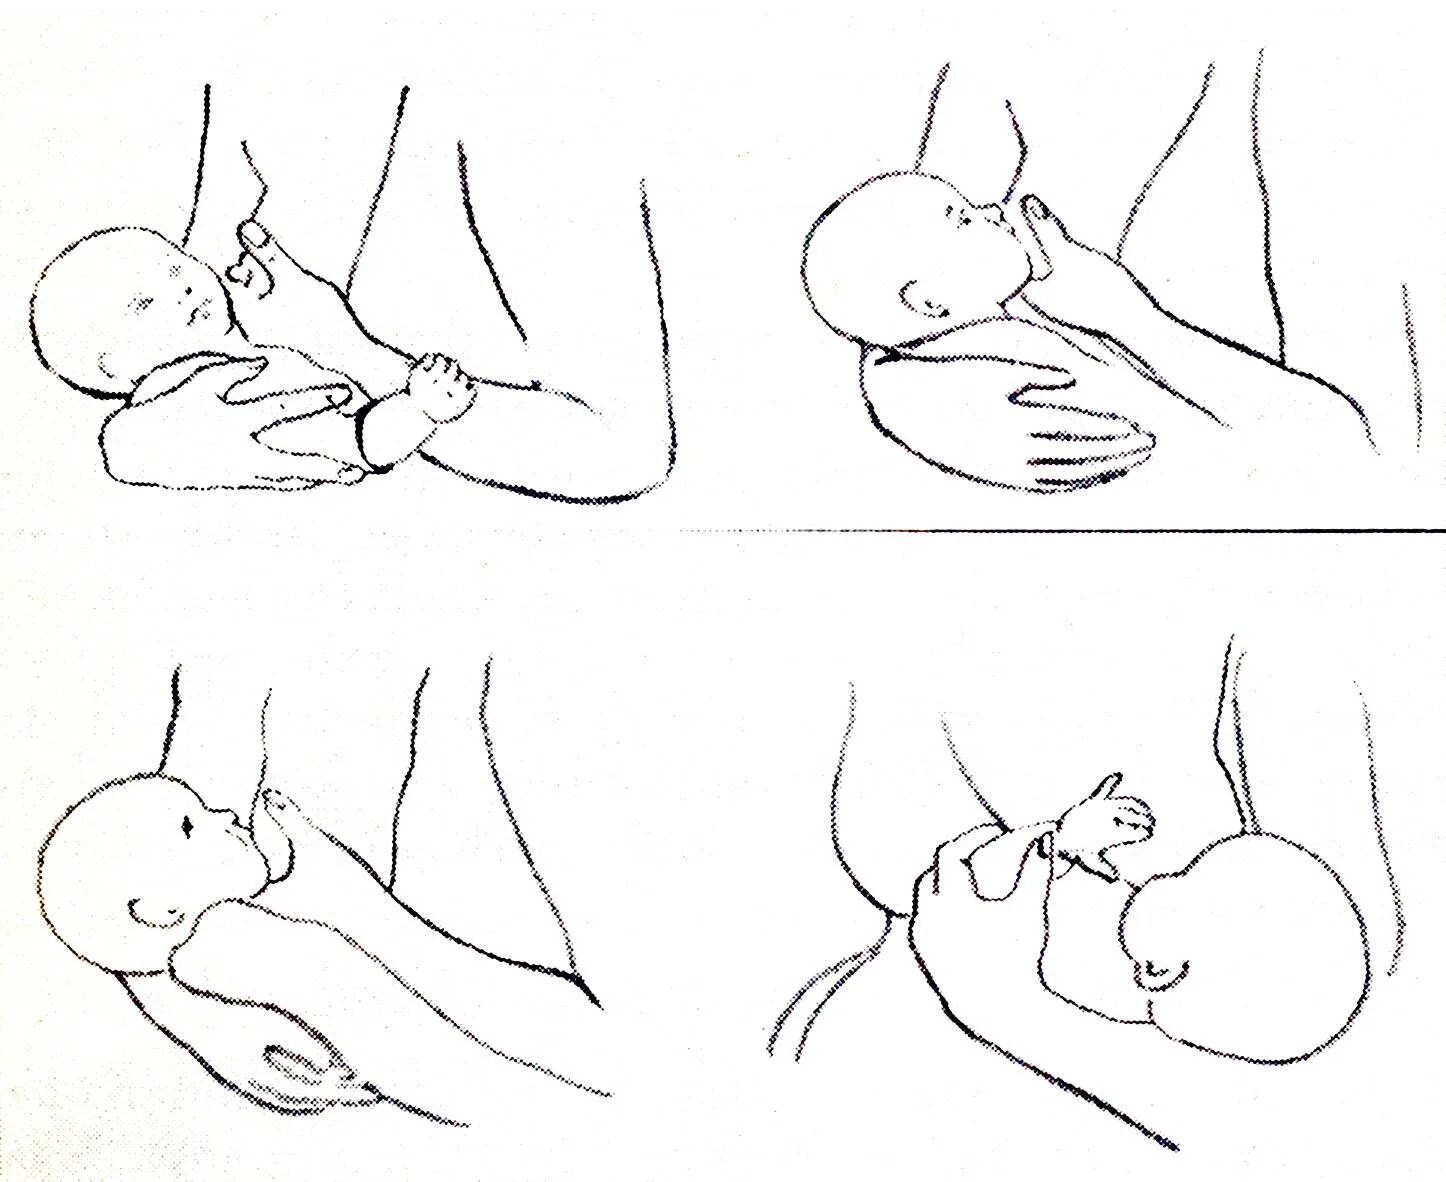 Правильная техника кормления новорожденного грудным молоком. Как правильно прикладывать ребенка для кормления новорожденного. Техника прикладывания ребенка к груди. Вскармливание новорождённого.. Прикладывание новорожденного при грудном вскармливании.